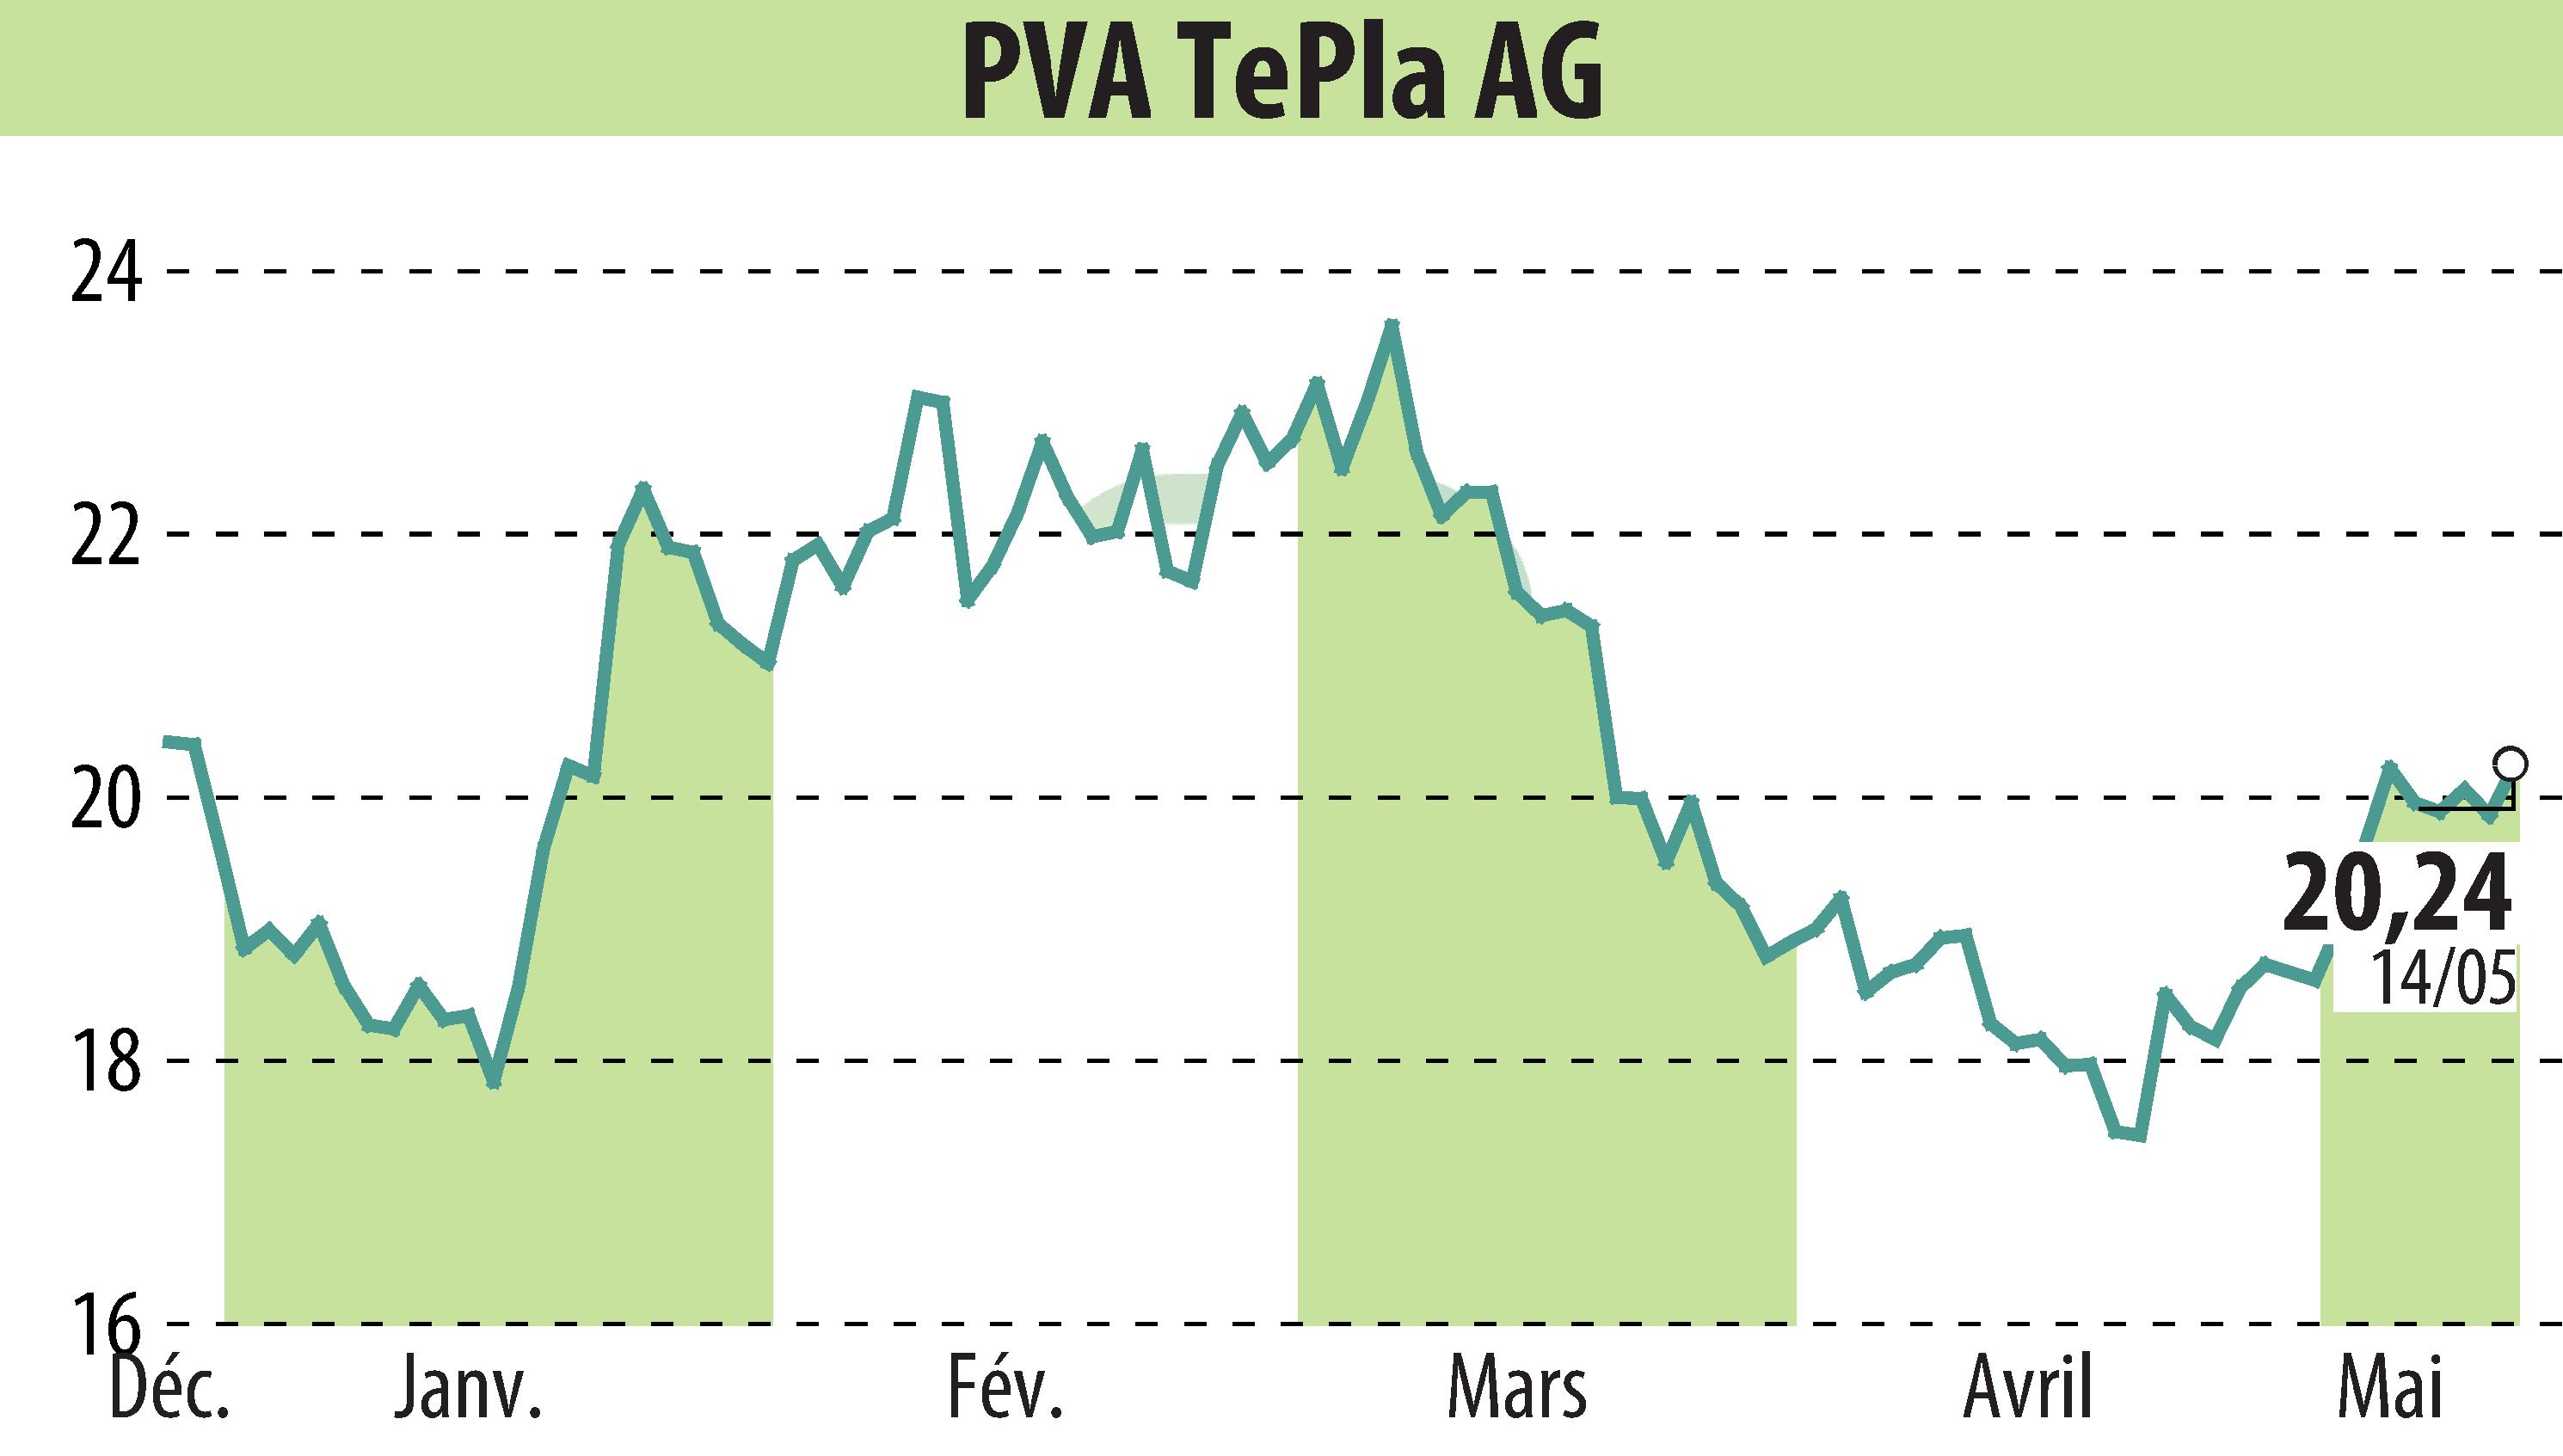 Graphique de l'évolution du cours de l'action PVA TePla AG (EBR:TPE).